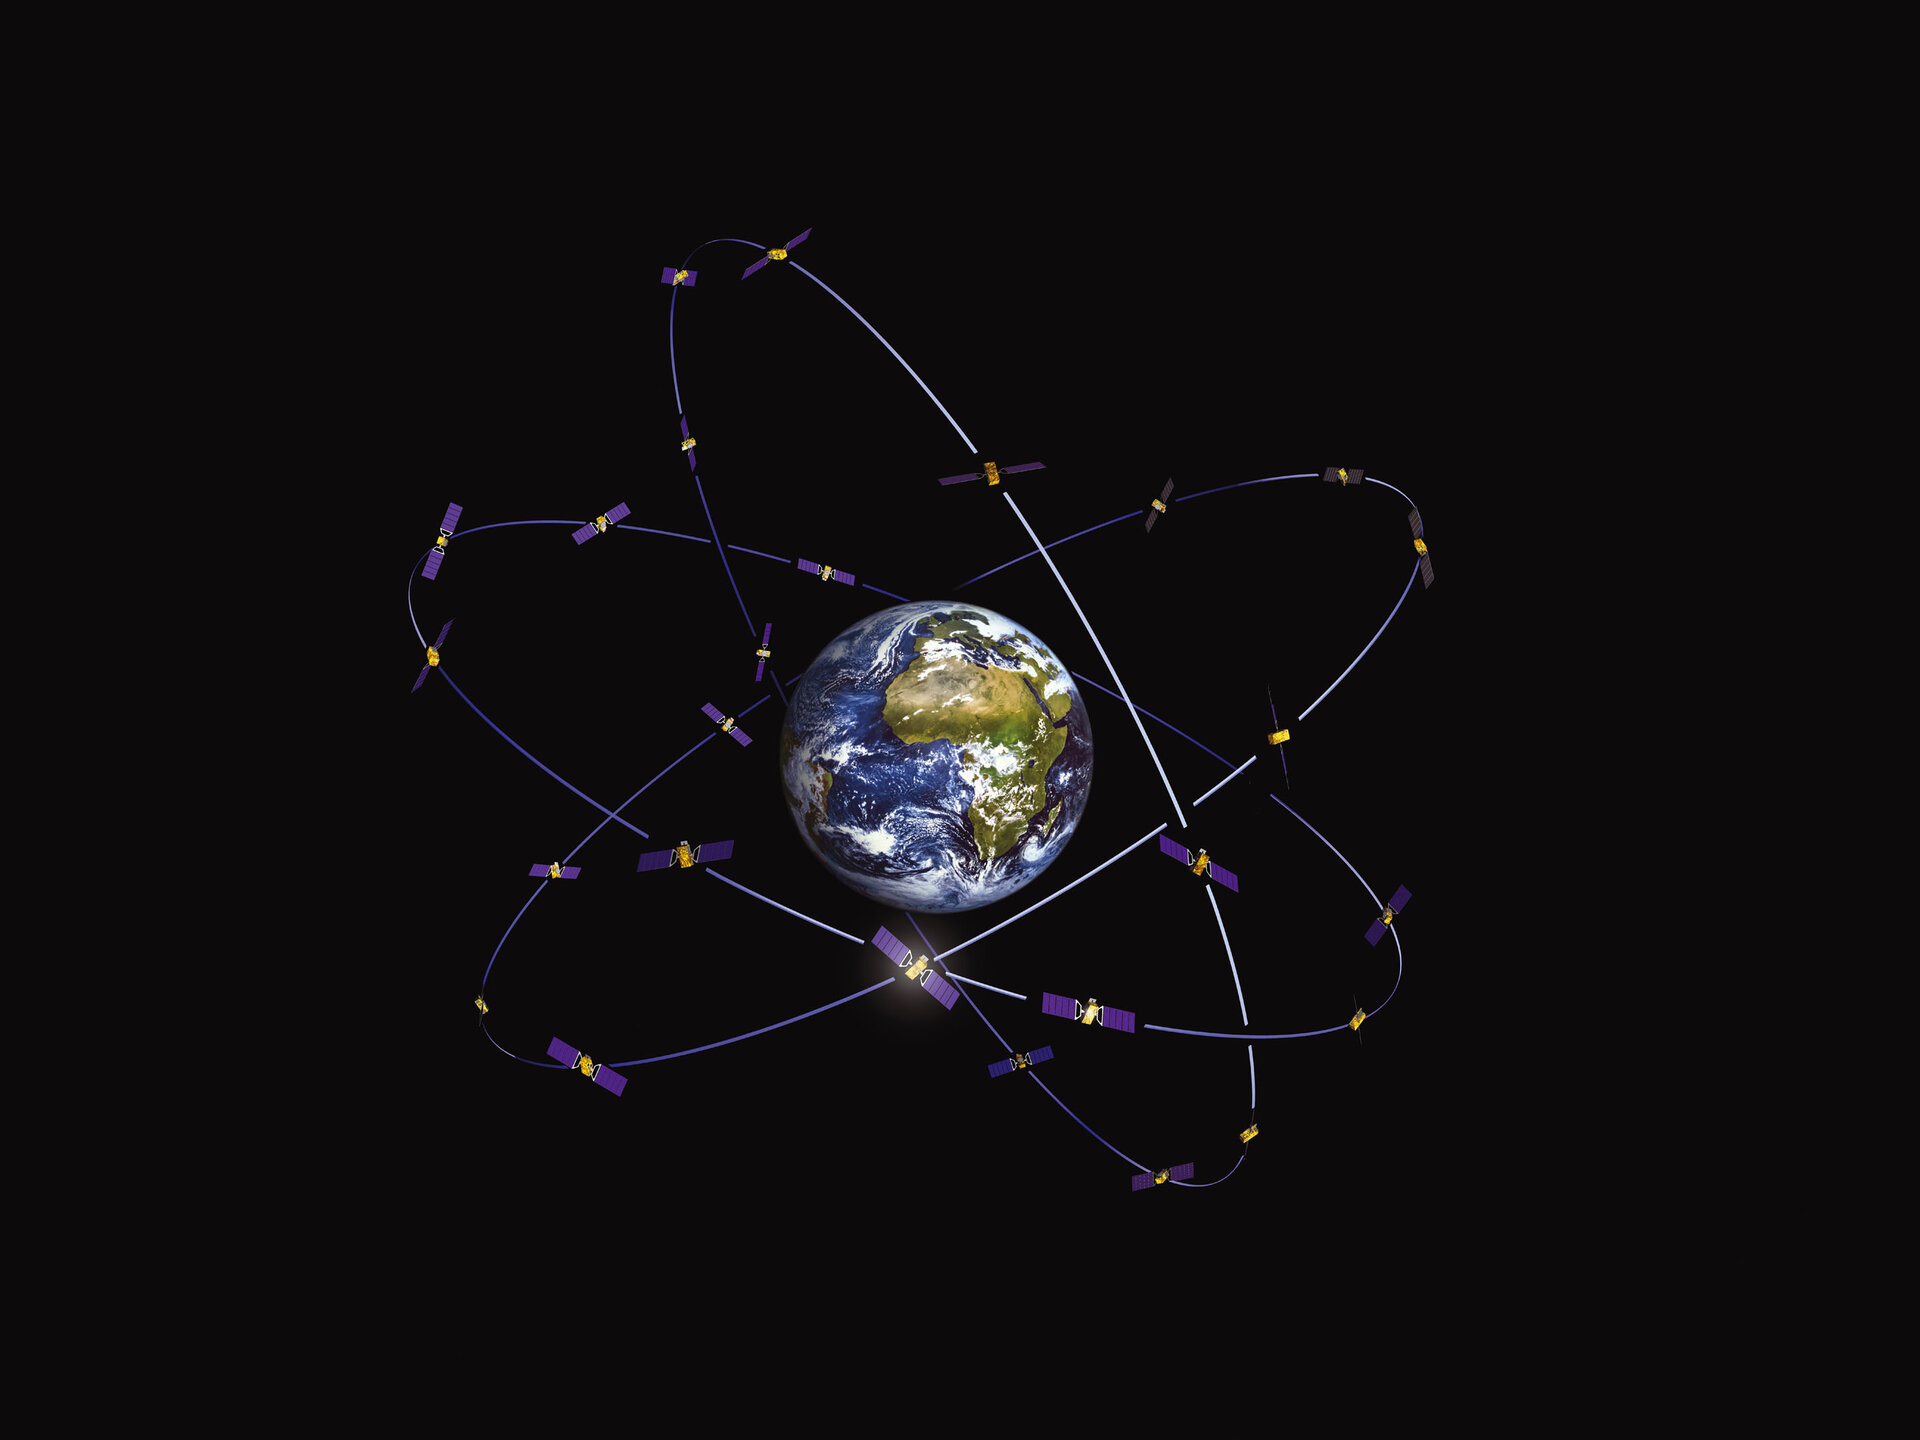 EGNOS is the precursor to Galileo